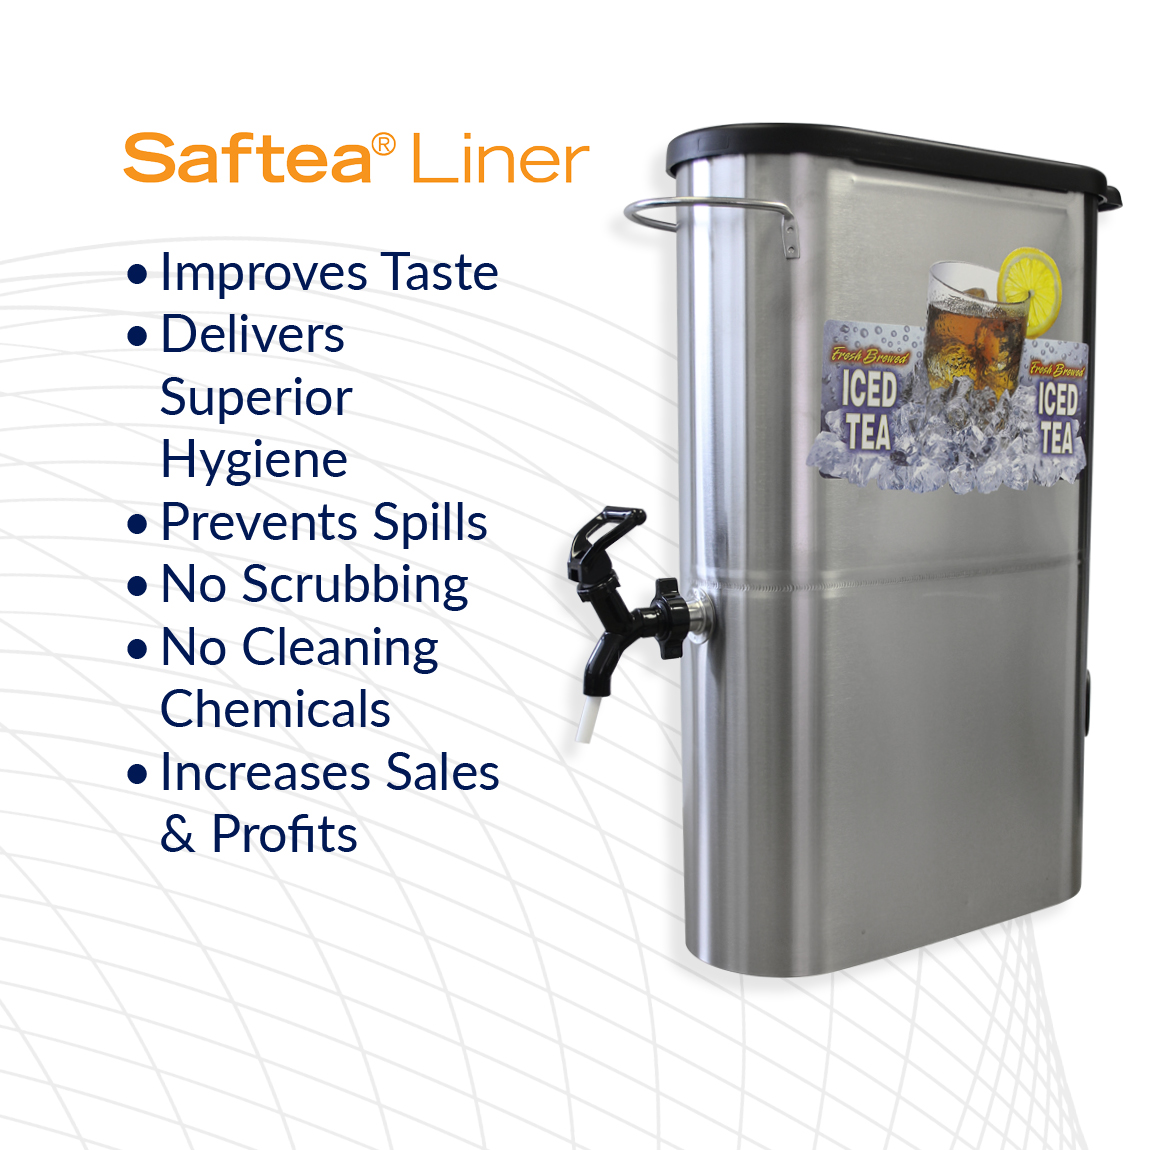 Saftea Liner® Benefits